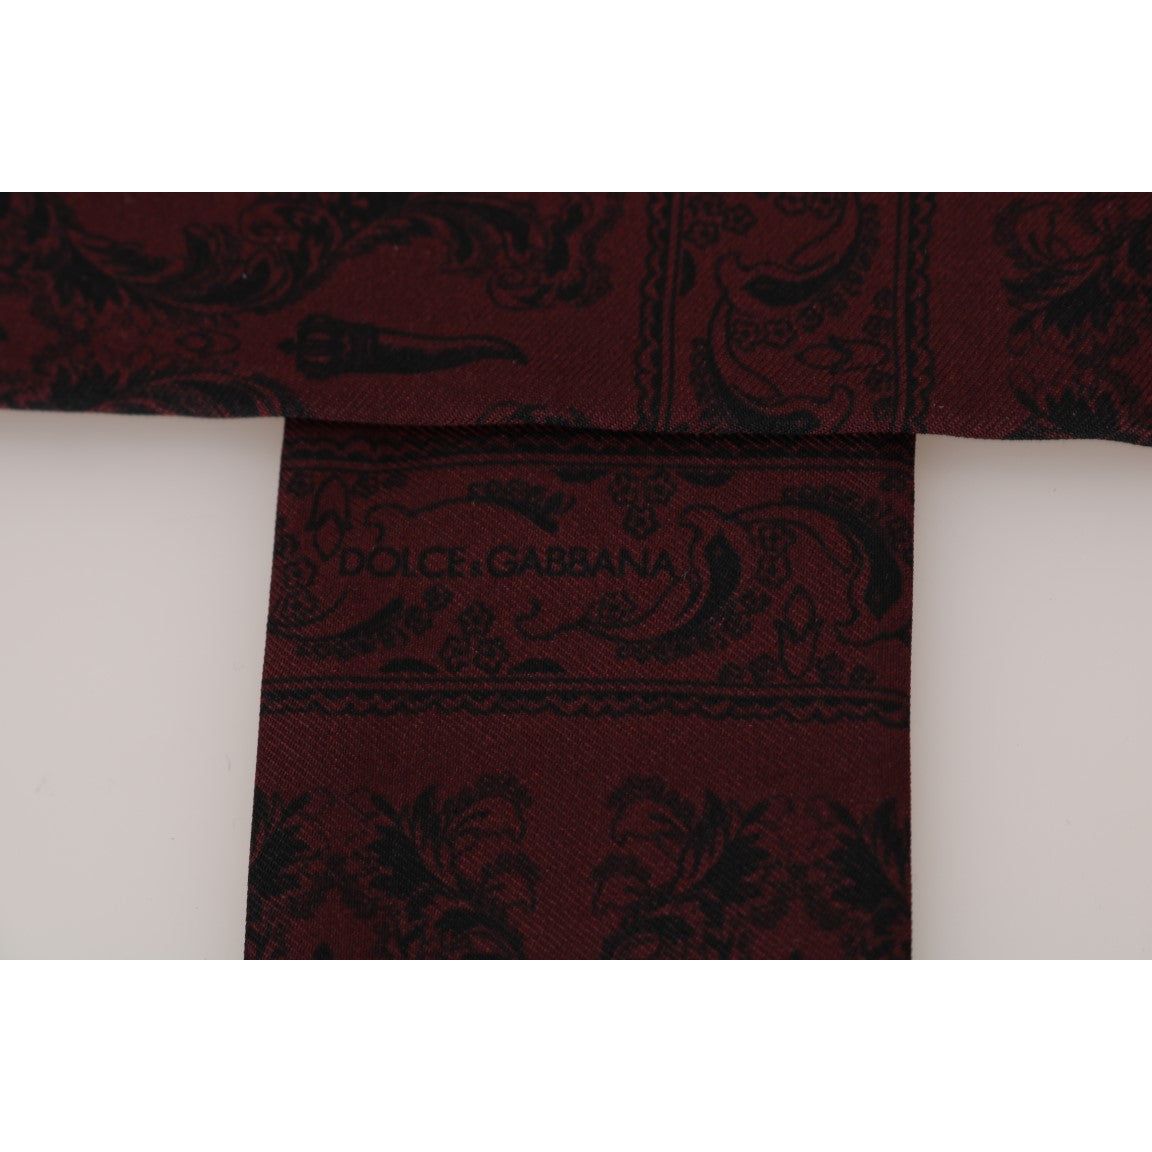 Dolce & Gabbana Silk Bordeaux Crown Chili Print Mens Scarf bordeaux-silk-crown-chili-scarf Silk Scarves 517984-bordeaux-silk-crown-chili-scarf-3.jpg